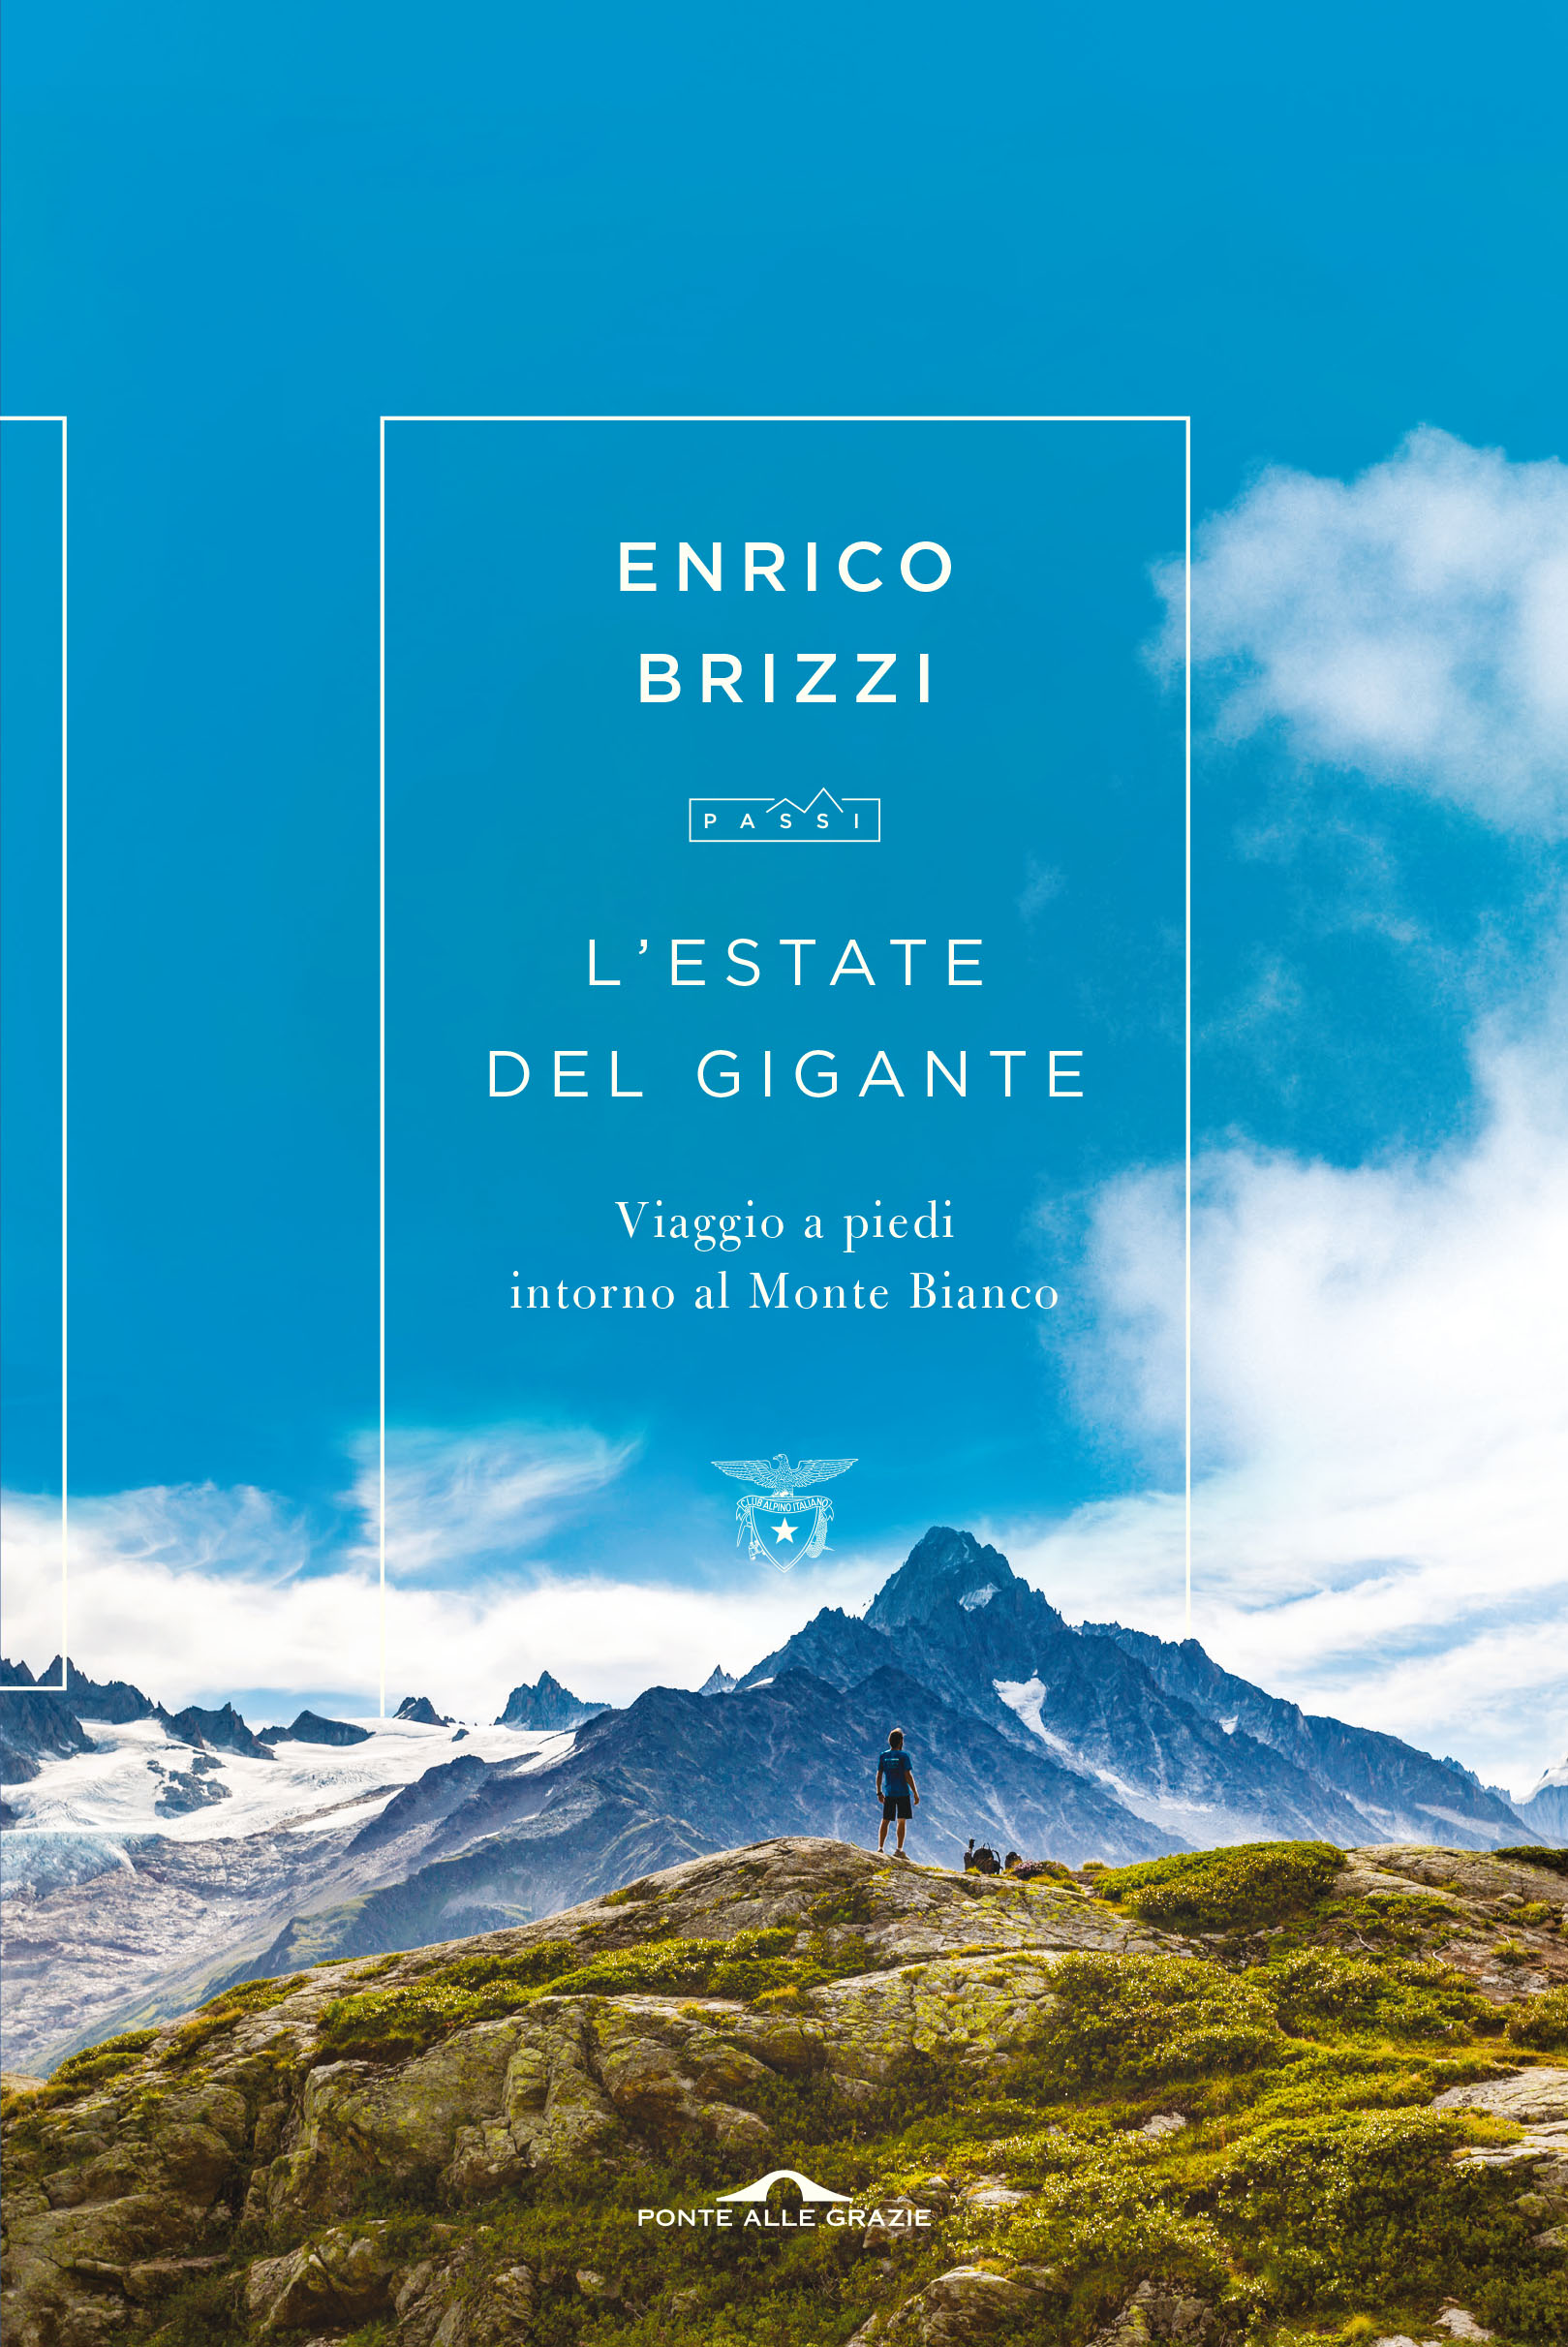 ‘L’estate del gigante’, alla scoperta del giro del Monte Bianco con Enrico Brizzi